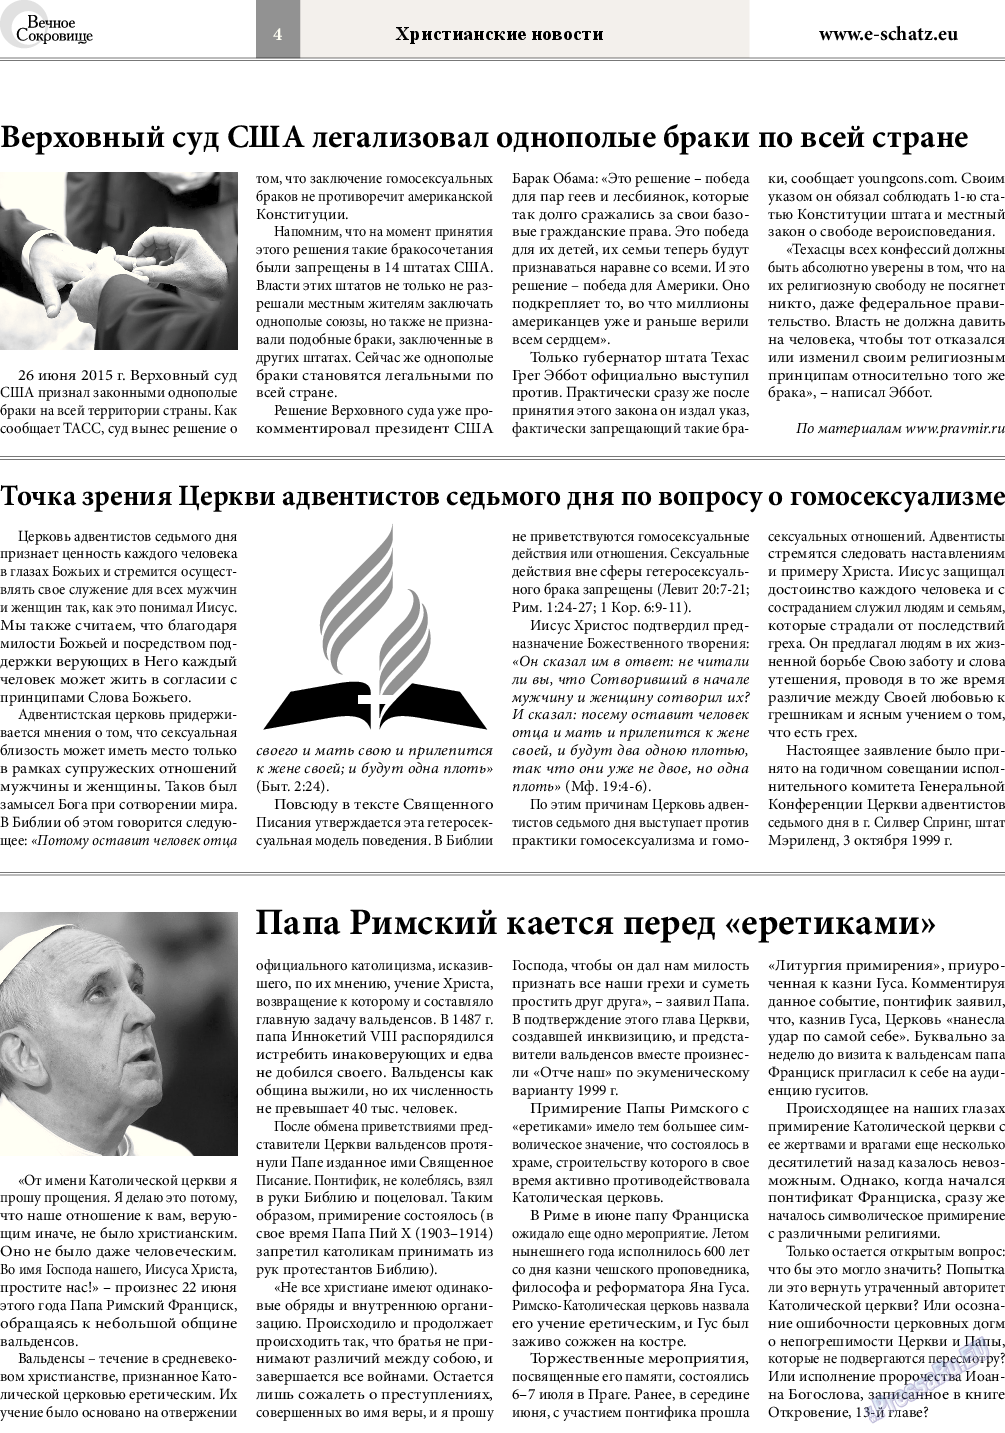 Вечное сокровище (газета). 2015 год, номер 4, стр. 4